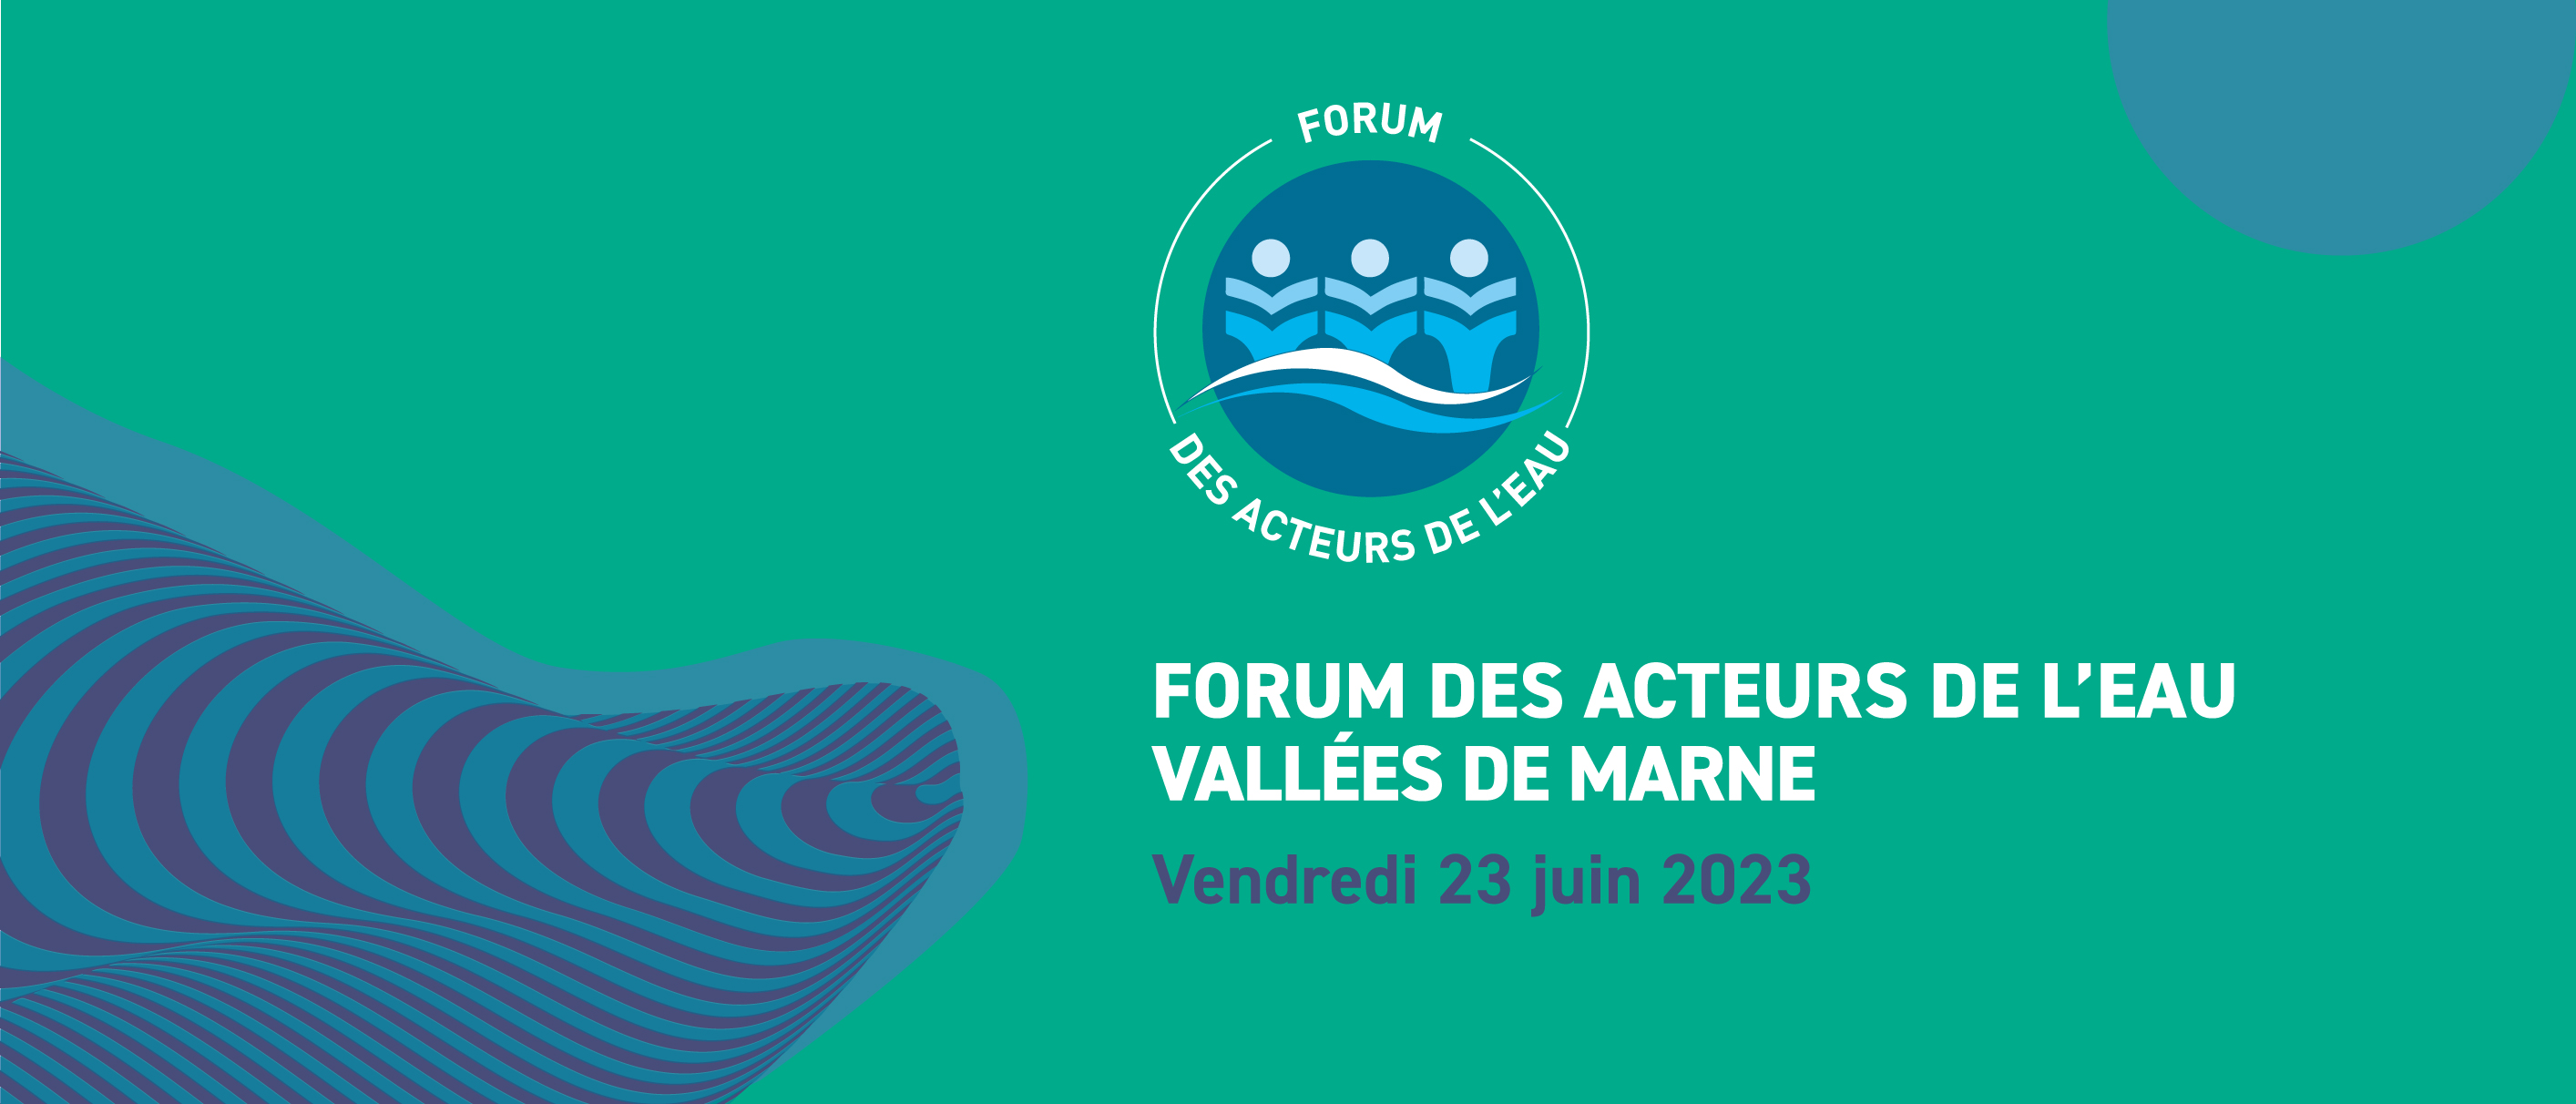 bandeau bleu et vert avec logo forum des acteurs de l'eau 